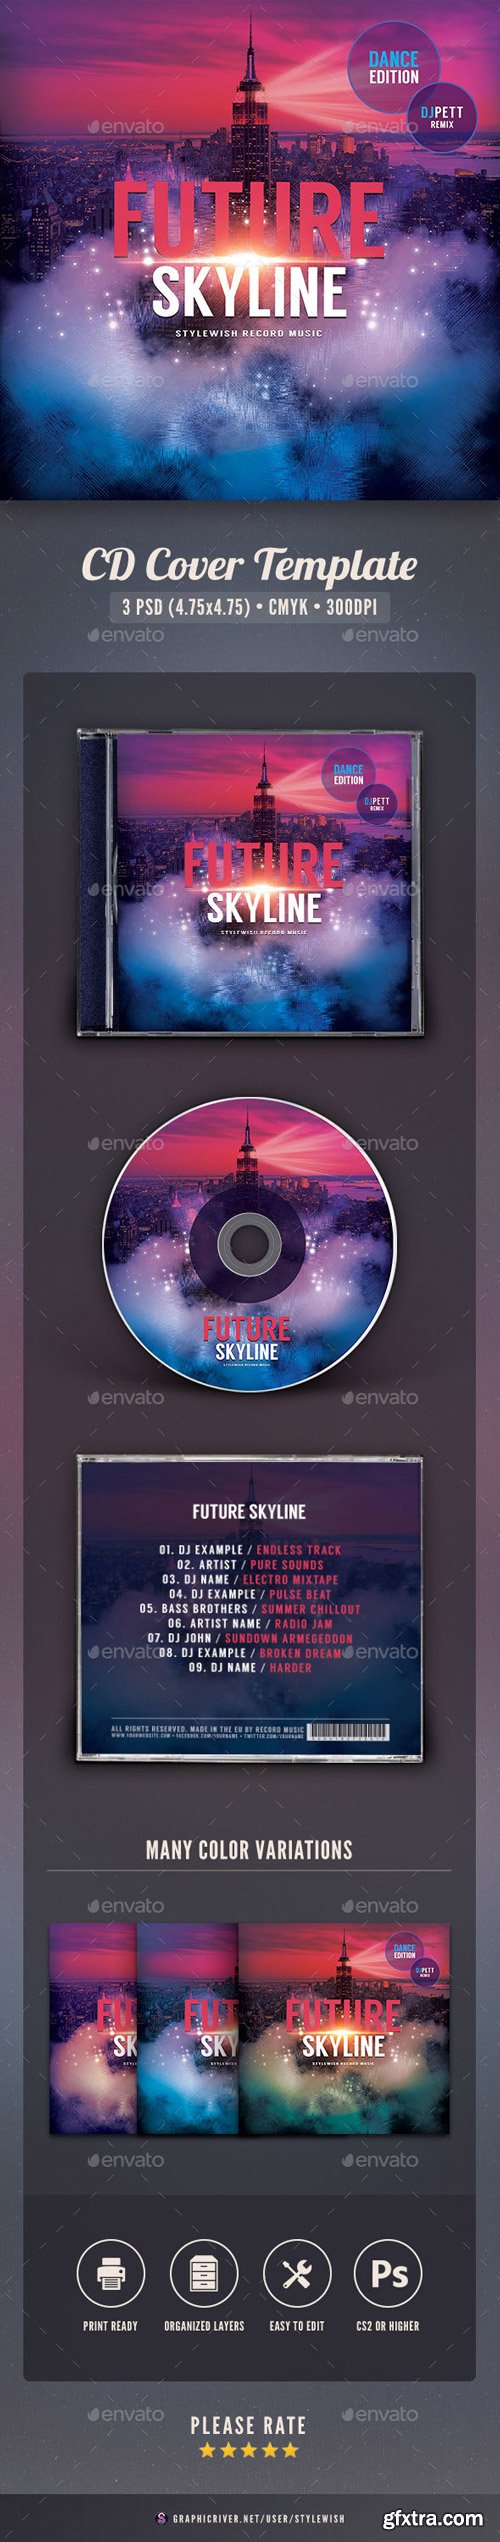 GraphicRiver - Future Skyline CD Cover Artwork - 16438829